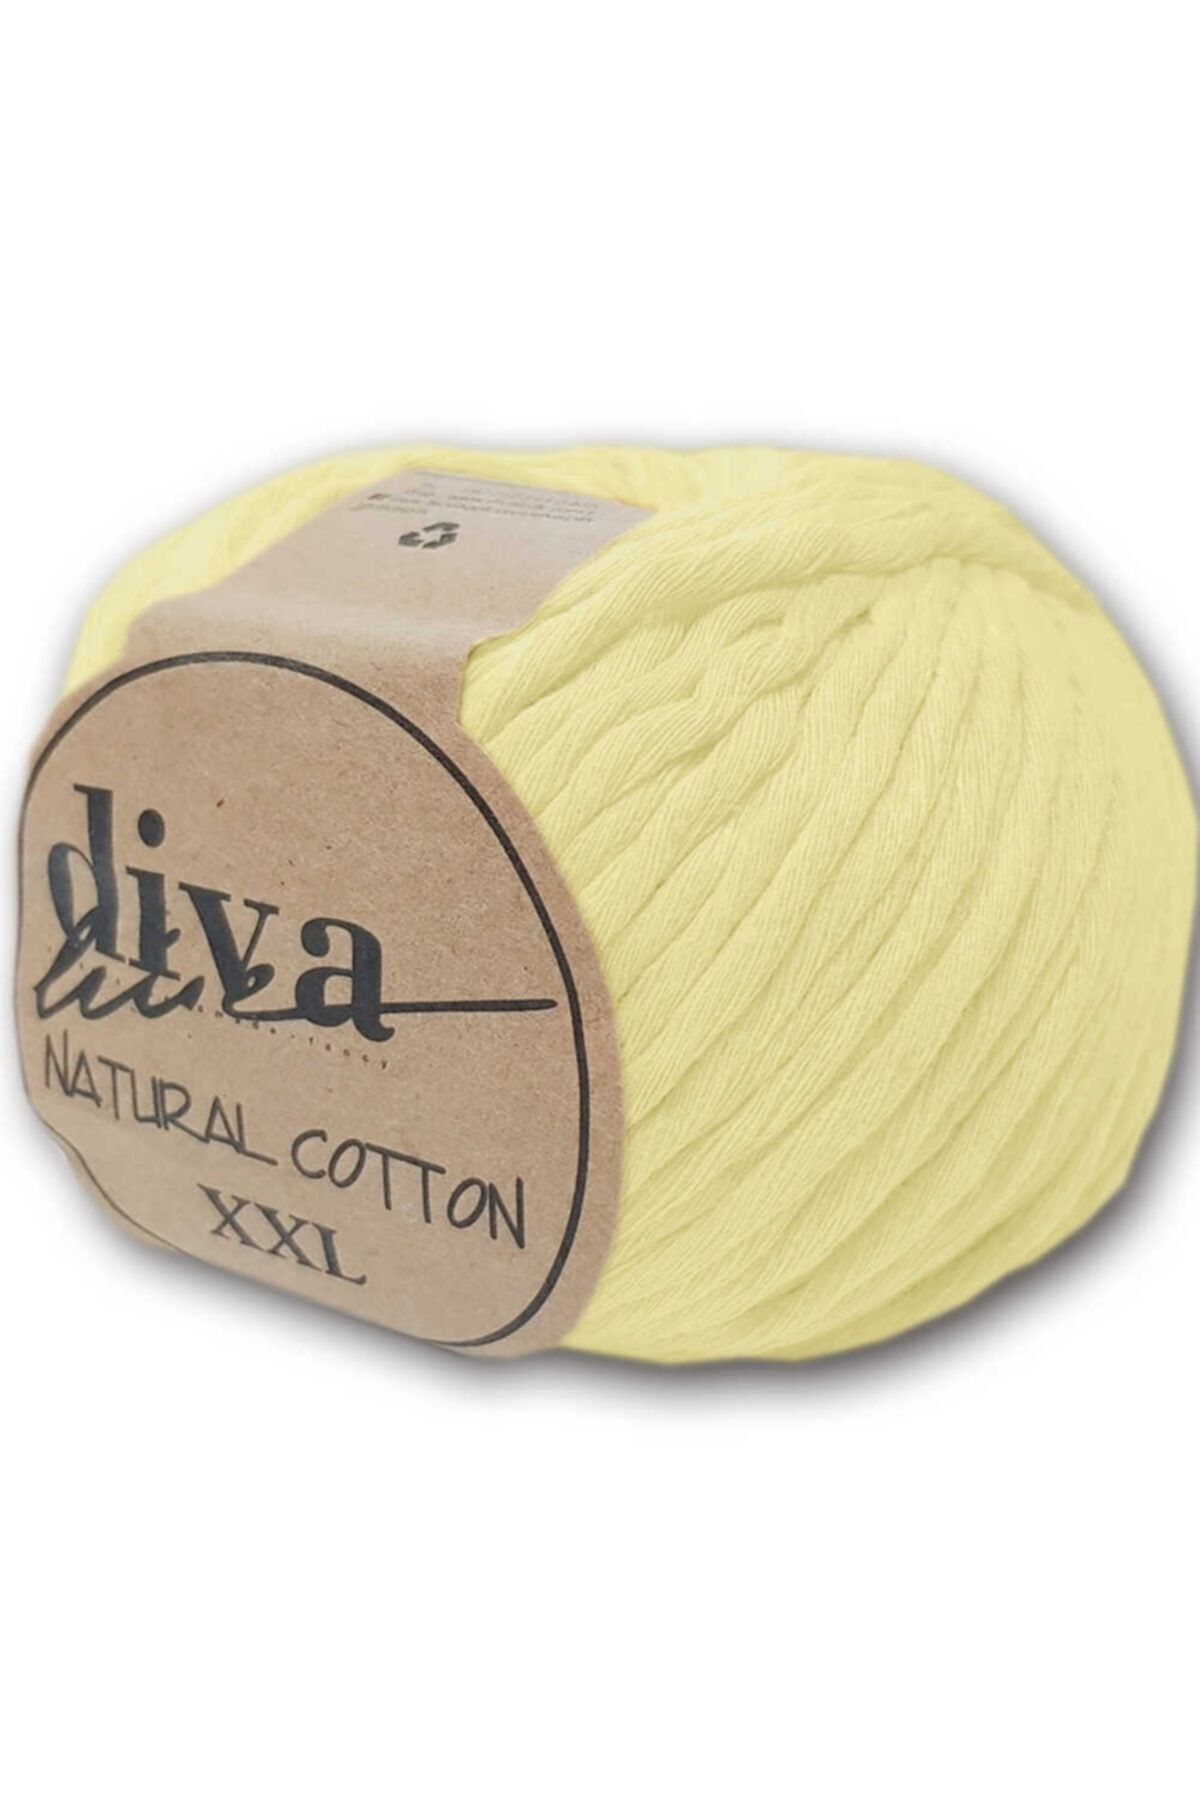 Diva İplik Diva Natural Cotton Xxl 1002 Soft Sarı